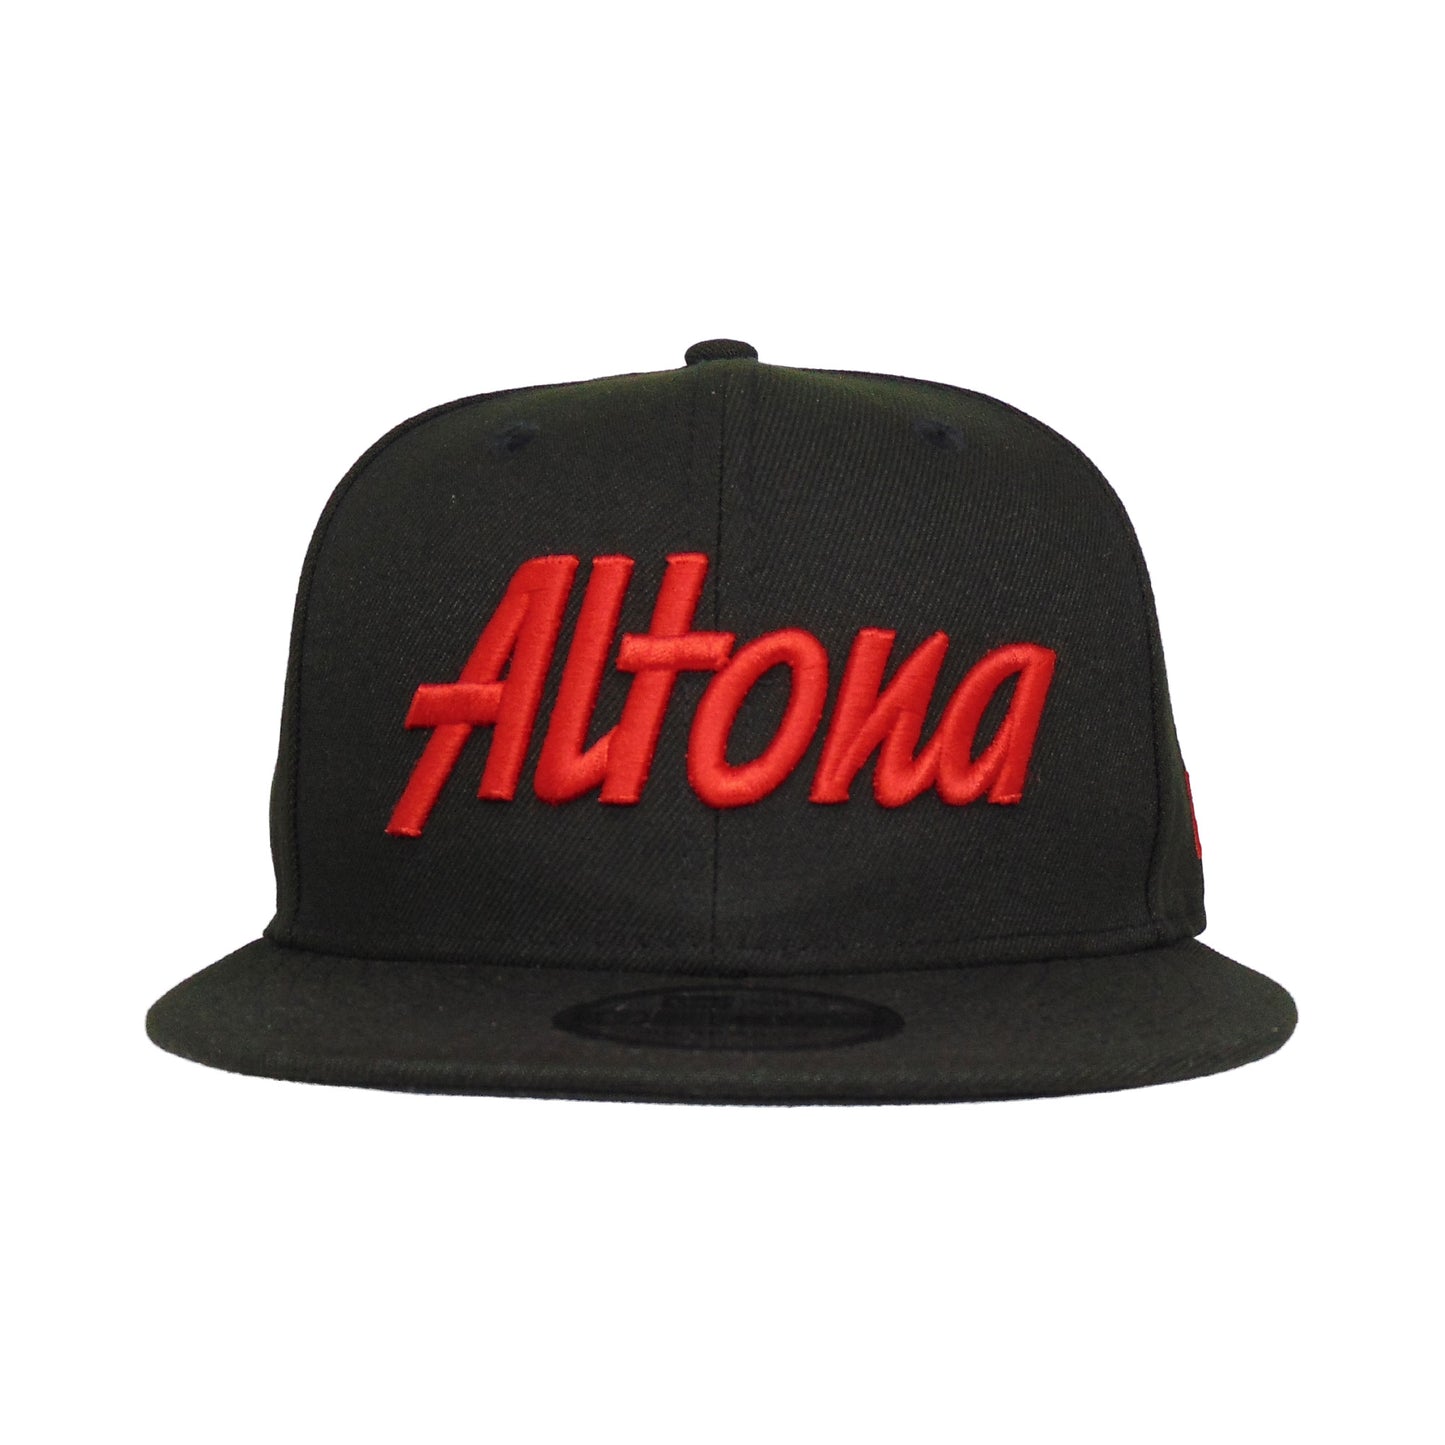 Justfitteds Custom New Era 9FIFTY Snapback Cap Altona